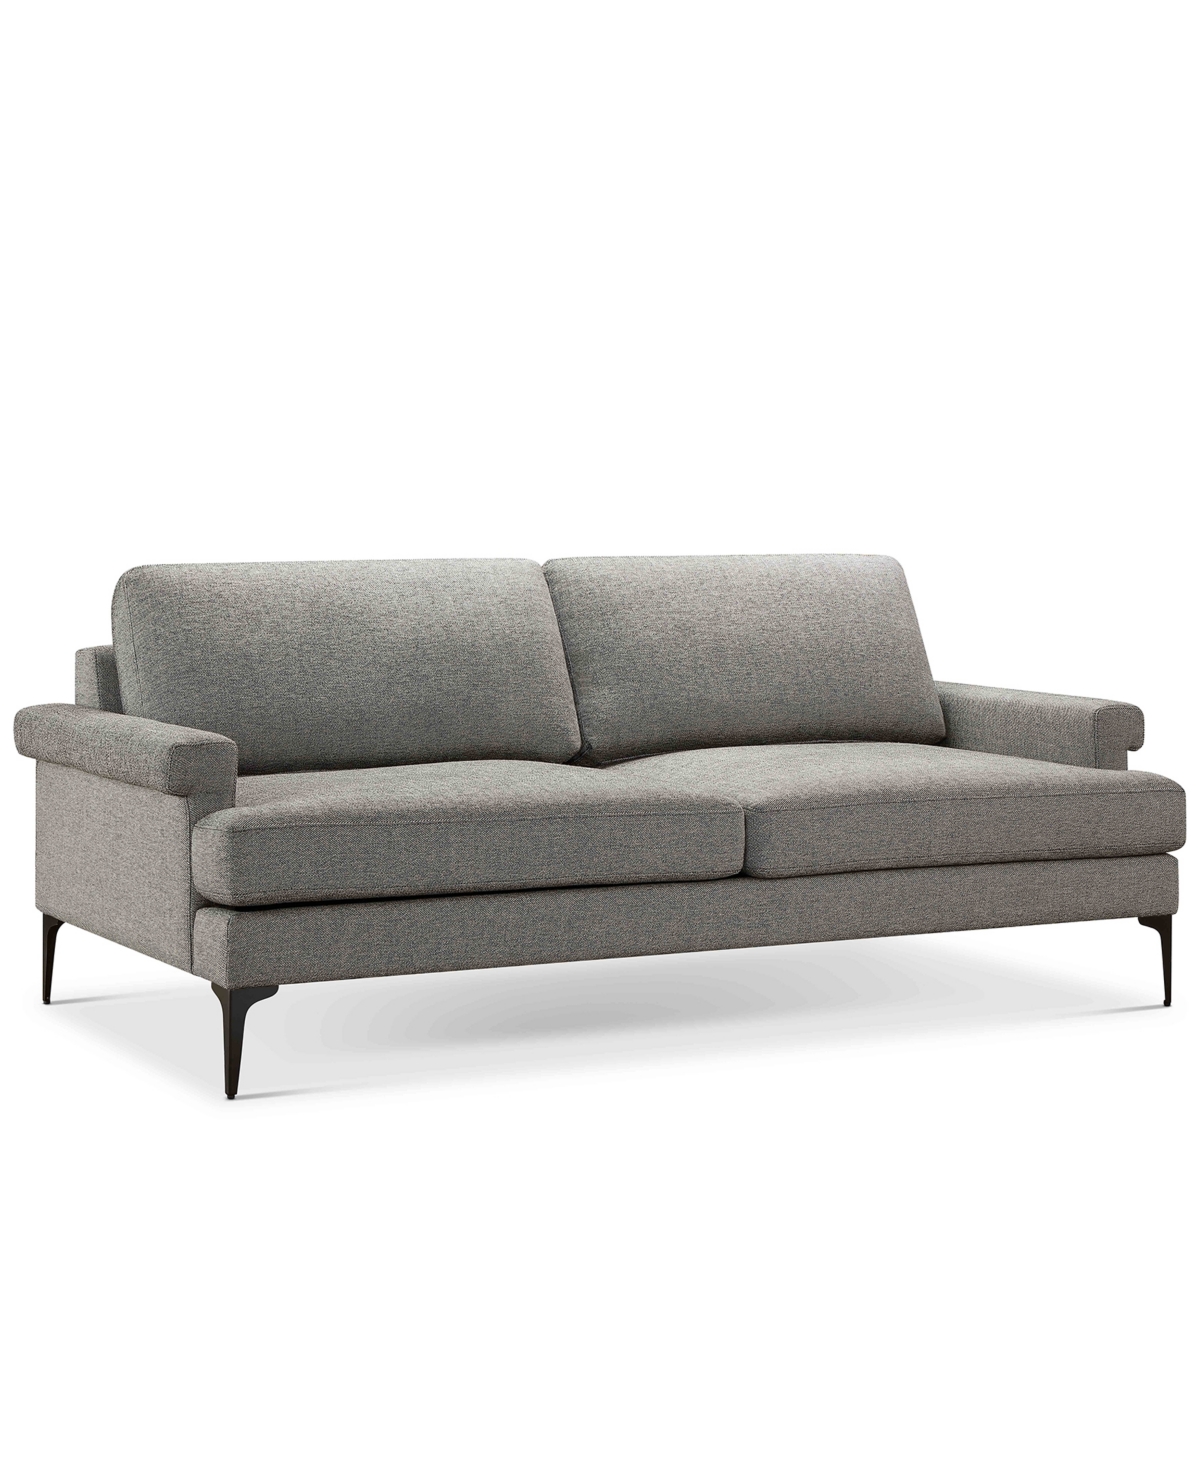 Abbyson Living Evella 84" Fabric Sofa In Gray